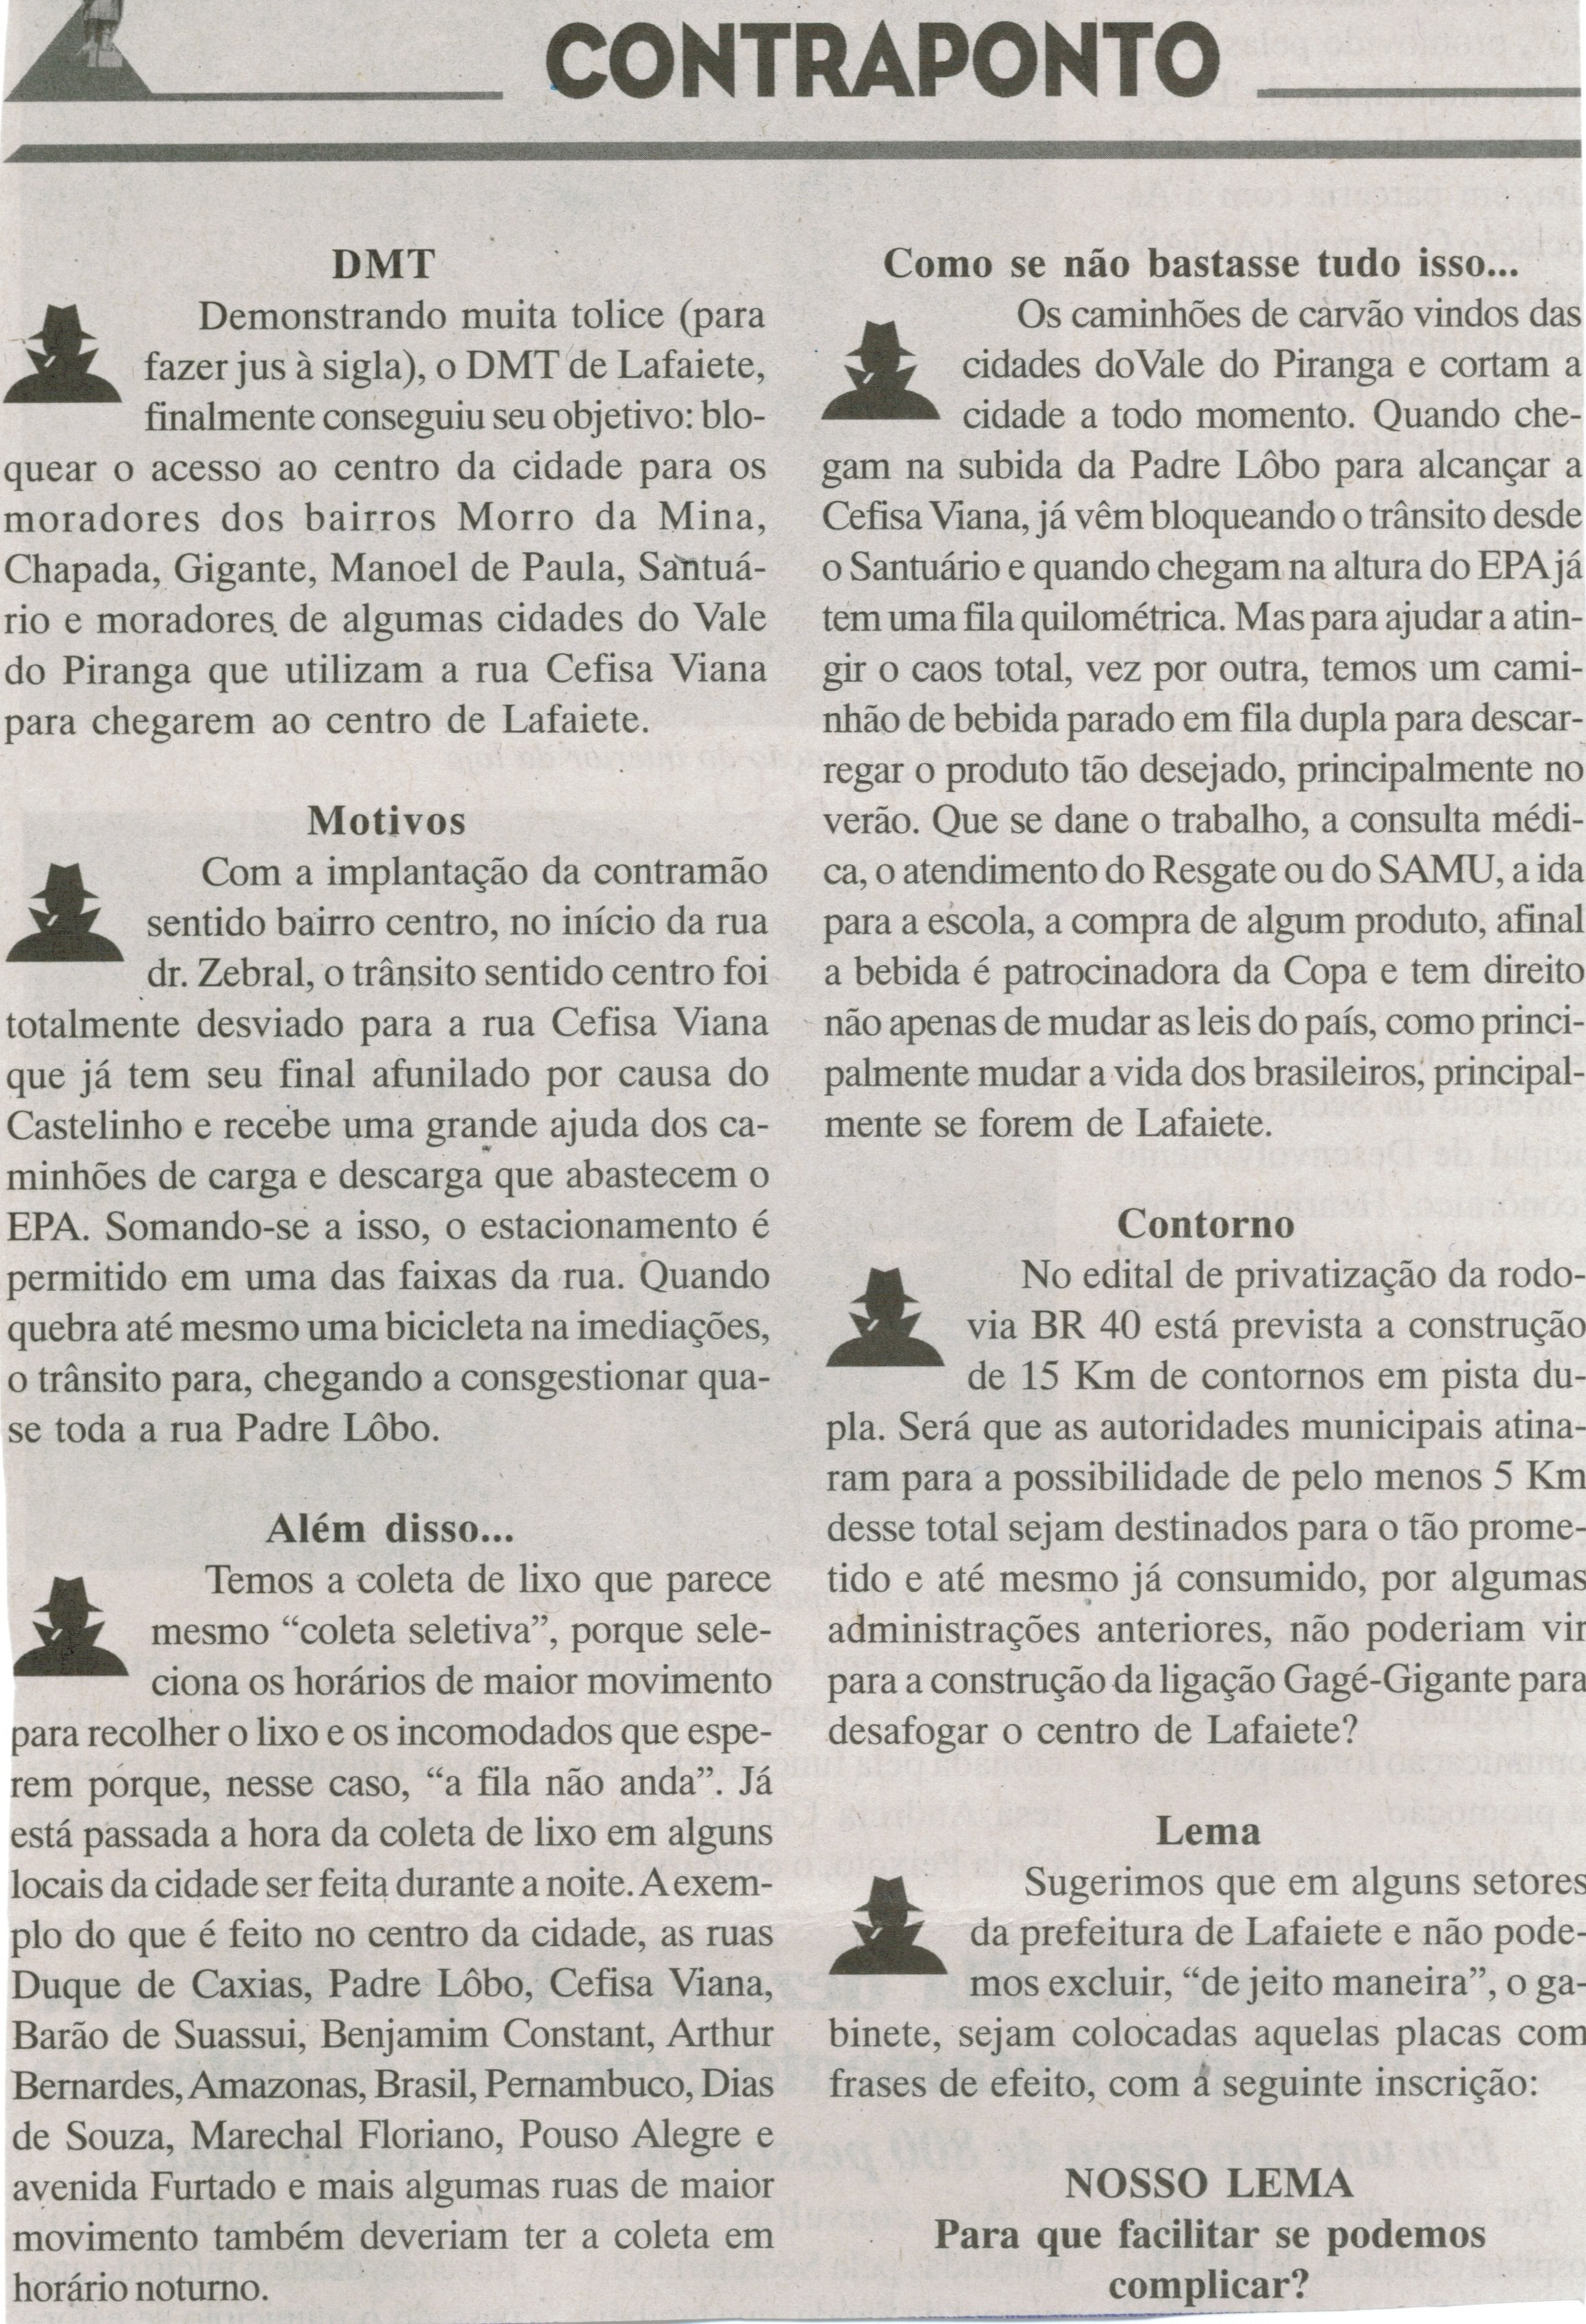 DMT; Além disso. Jornal Baruc, Congonhas, 15 jan. 2014, Contraponto, p. 5.